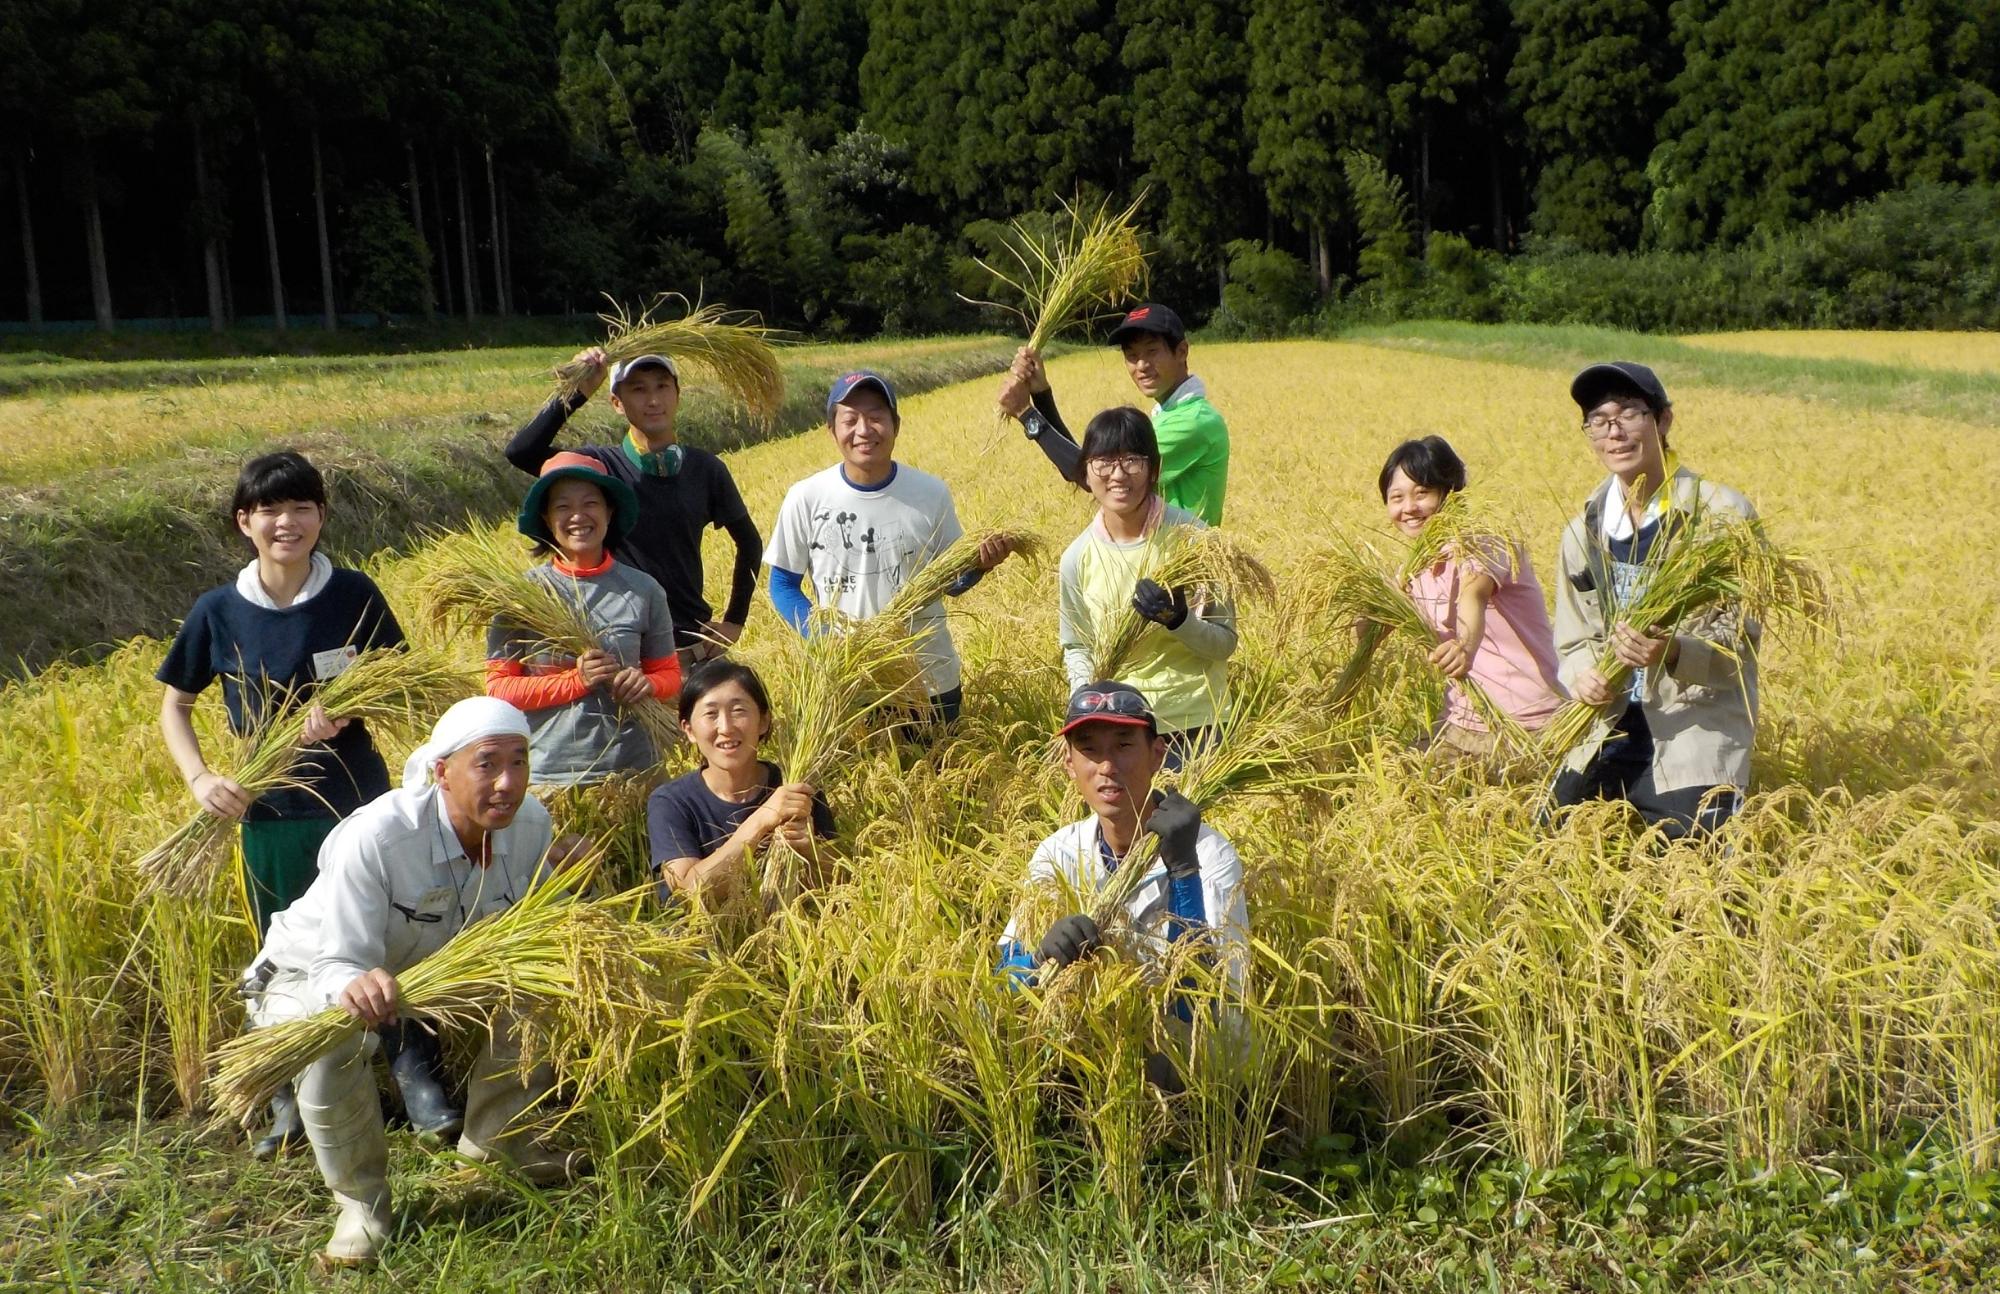 収穫した稲をもった男女11人の田んぼでの集合写真